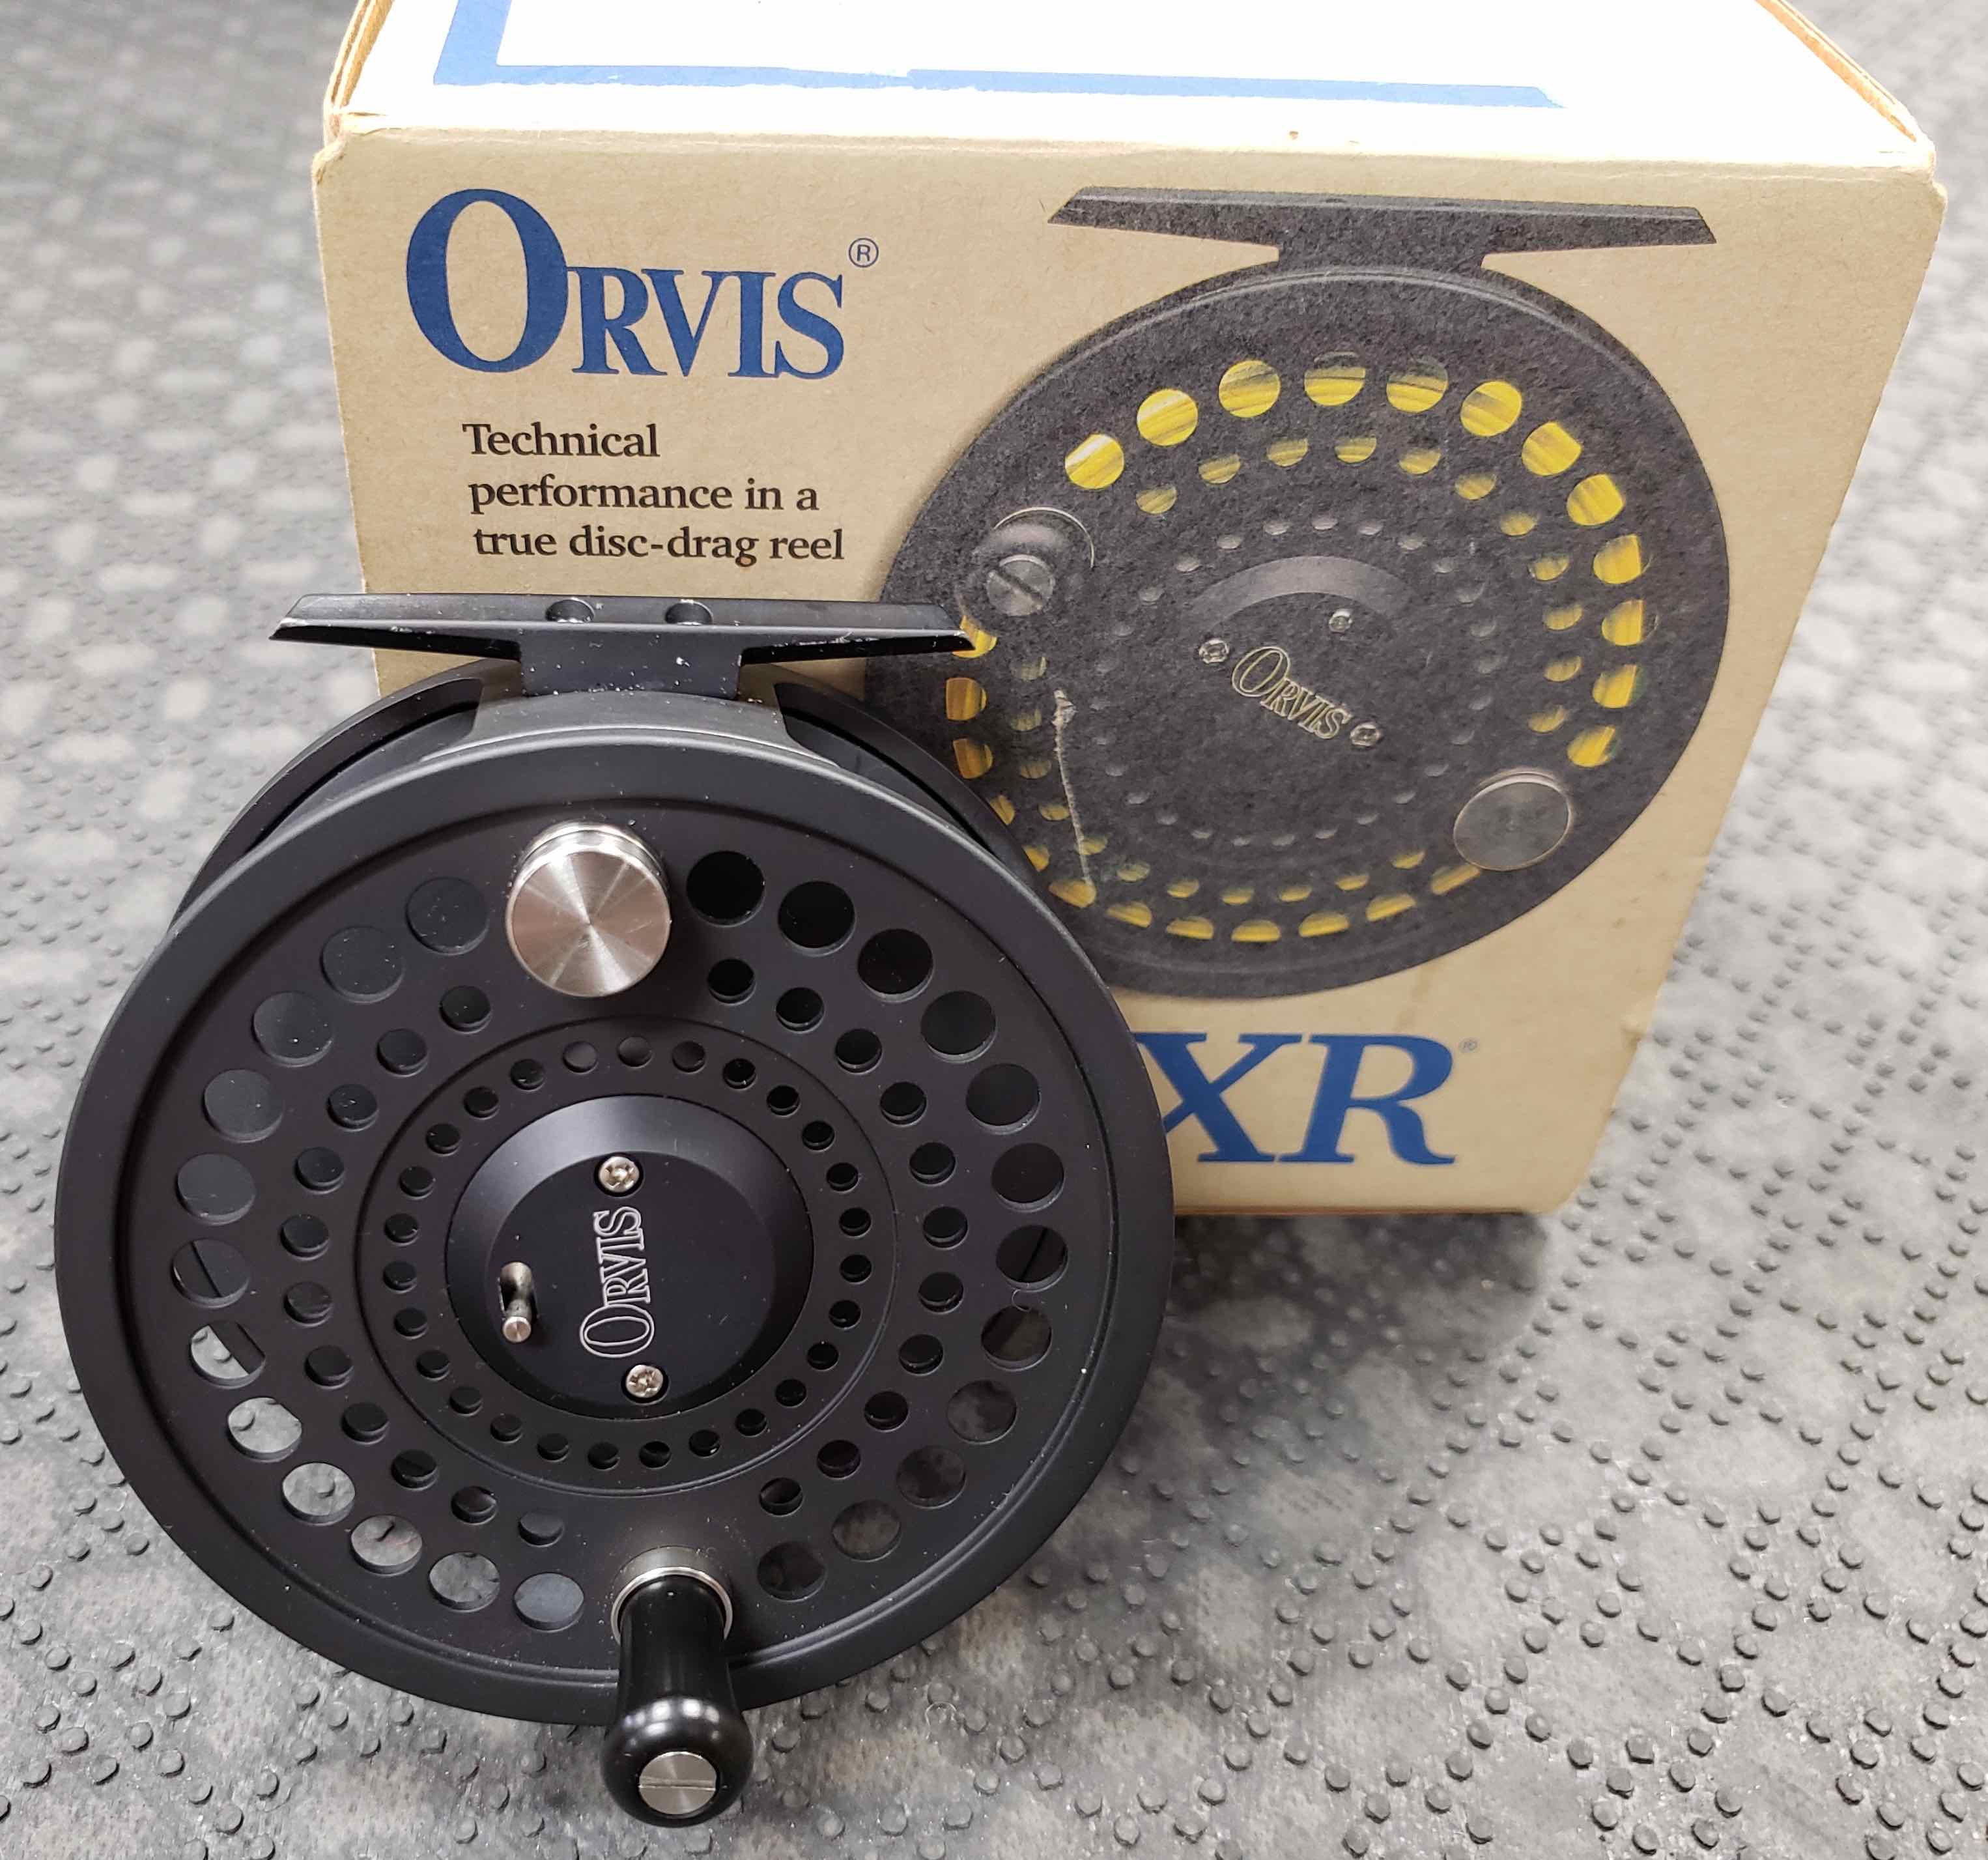 Orvis DXR 9/10 Fly Reel - GOOD SHAPE!